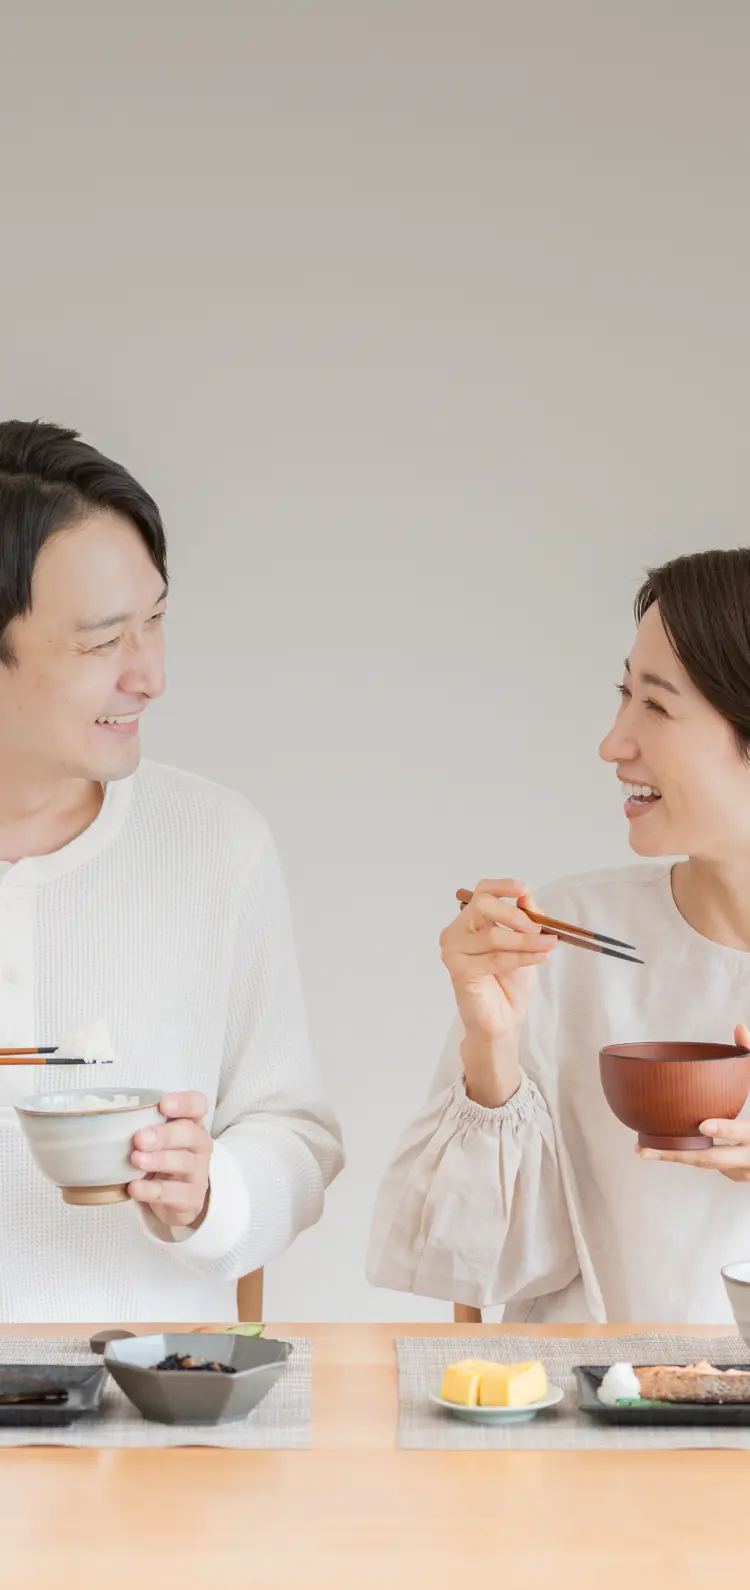 夫婦でお味噌汁をメインで食事している写真